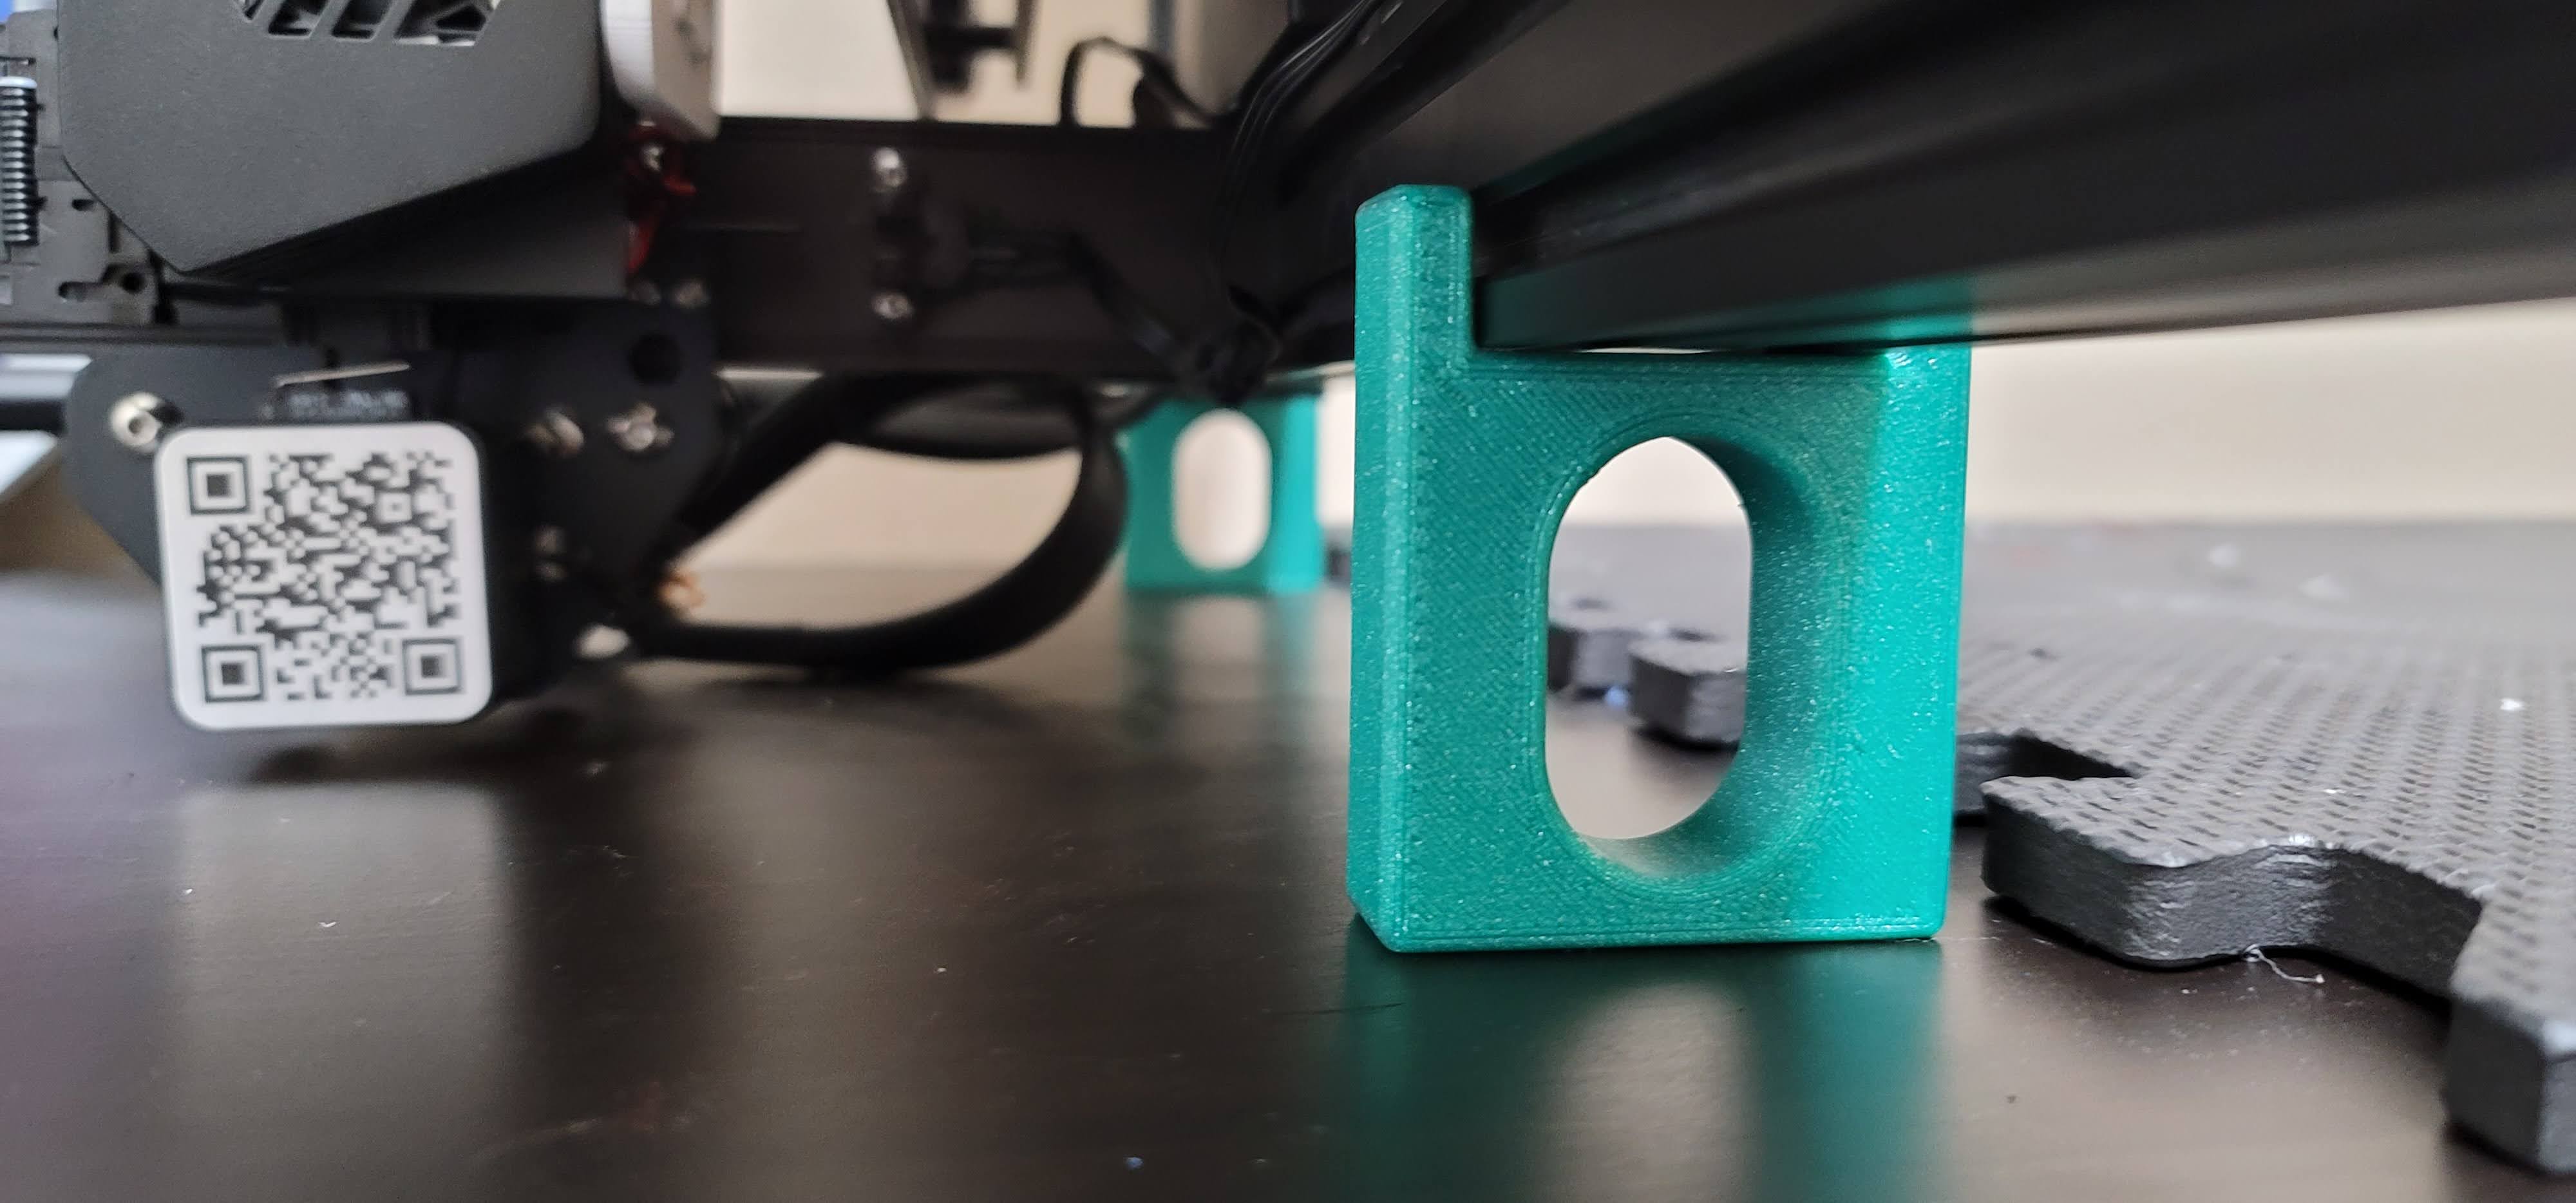 3D printer maintenance stand